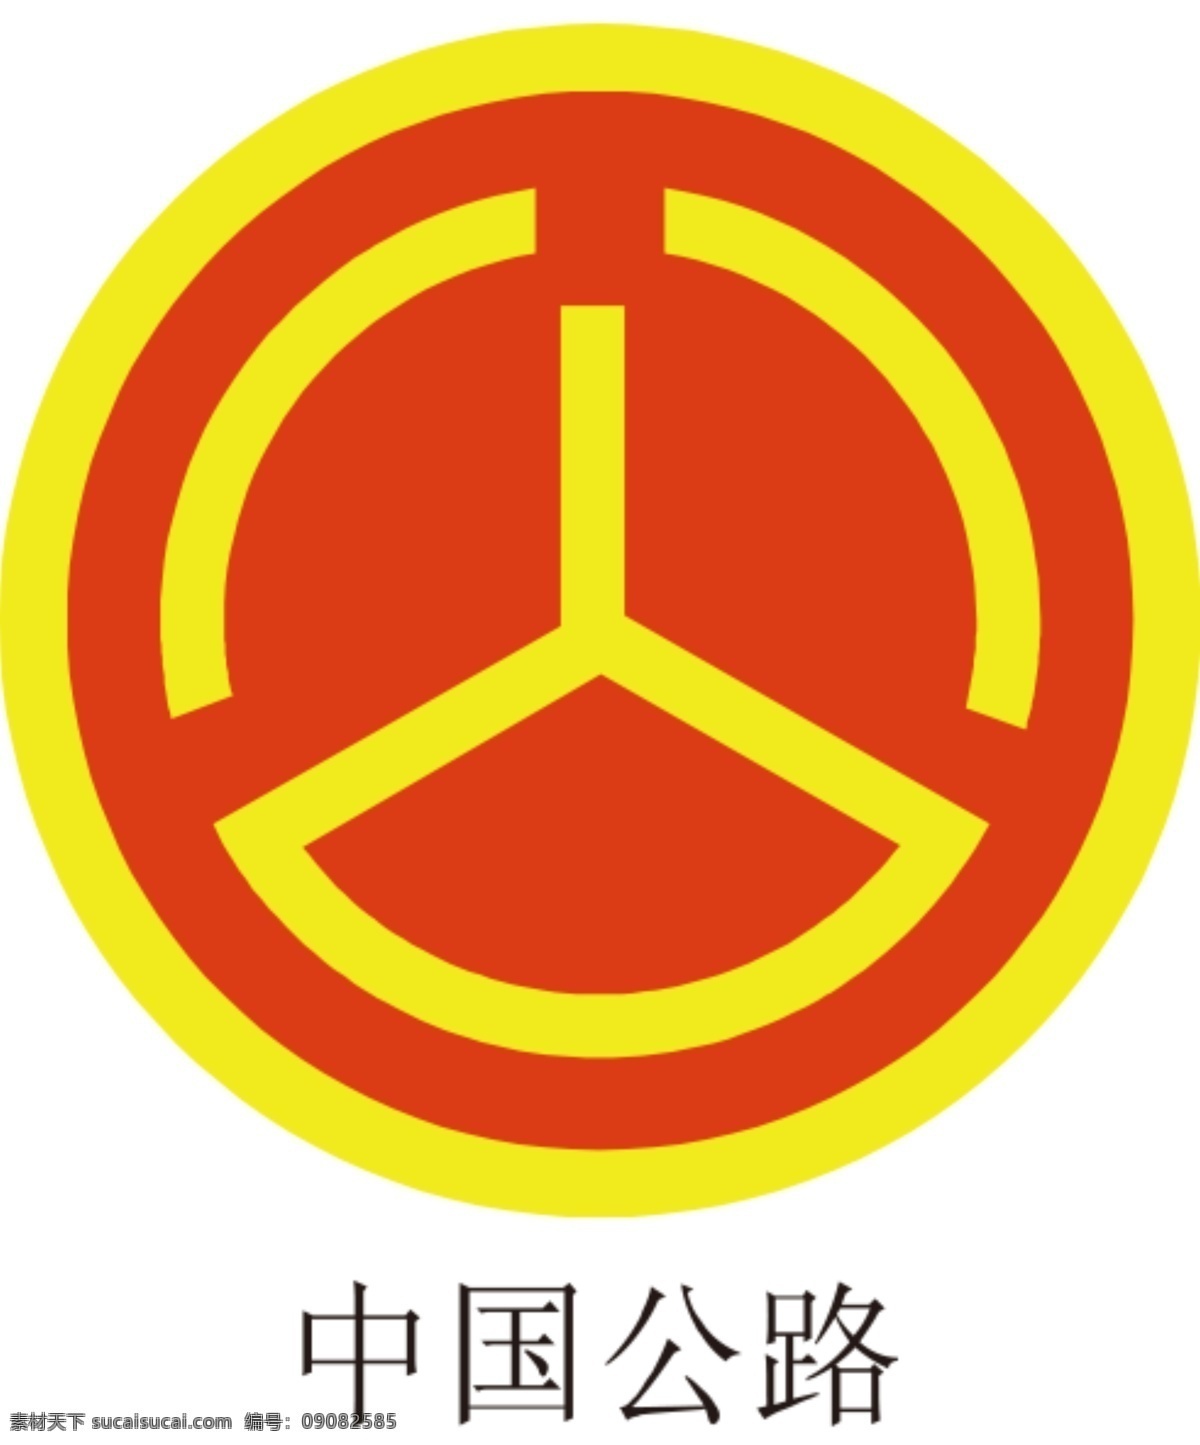 中国 公路 logo 公路标 公路标志 中国公路标志 路政